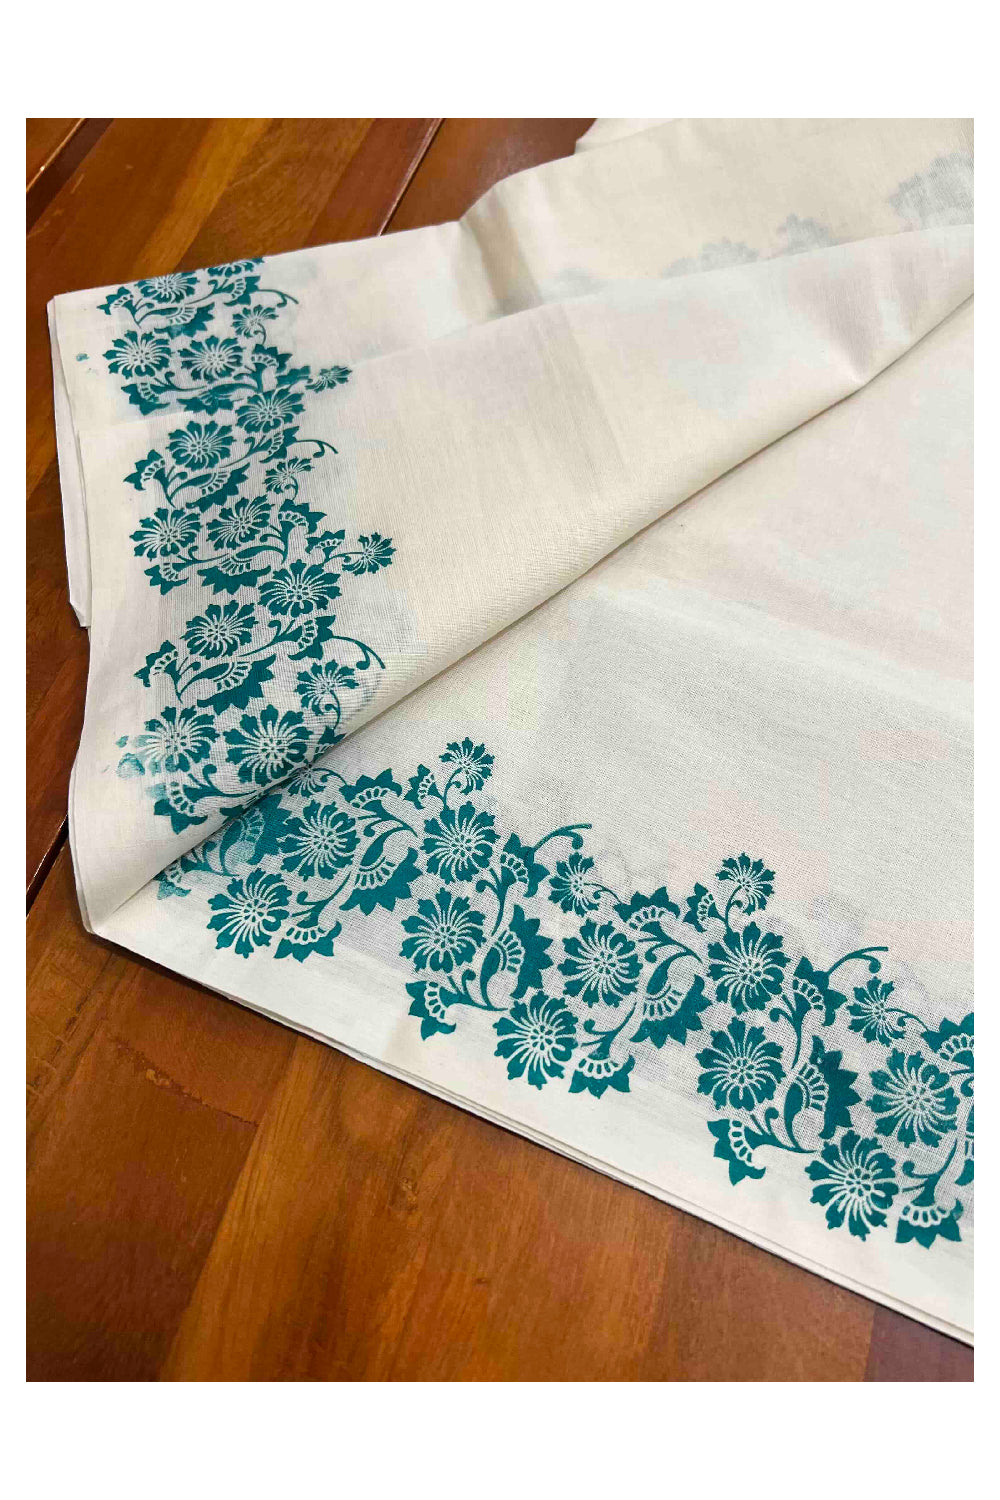 Kerala Cotton Mundum Neriyathum Single (Set Mundu) with Green Floral Block Prints in Border 2.80 Mtrs